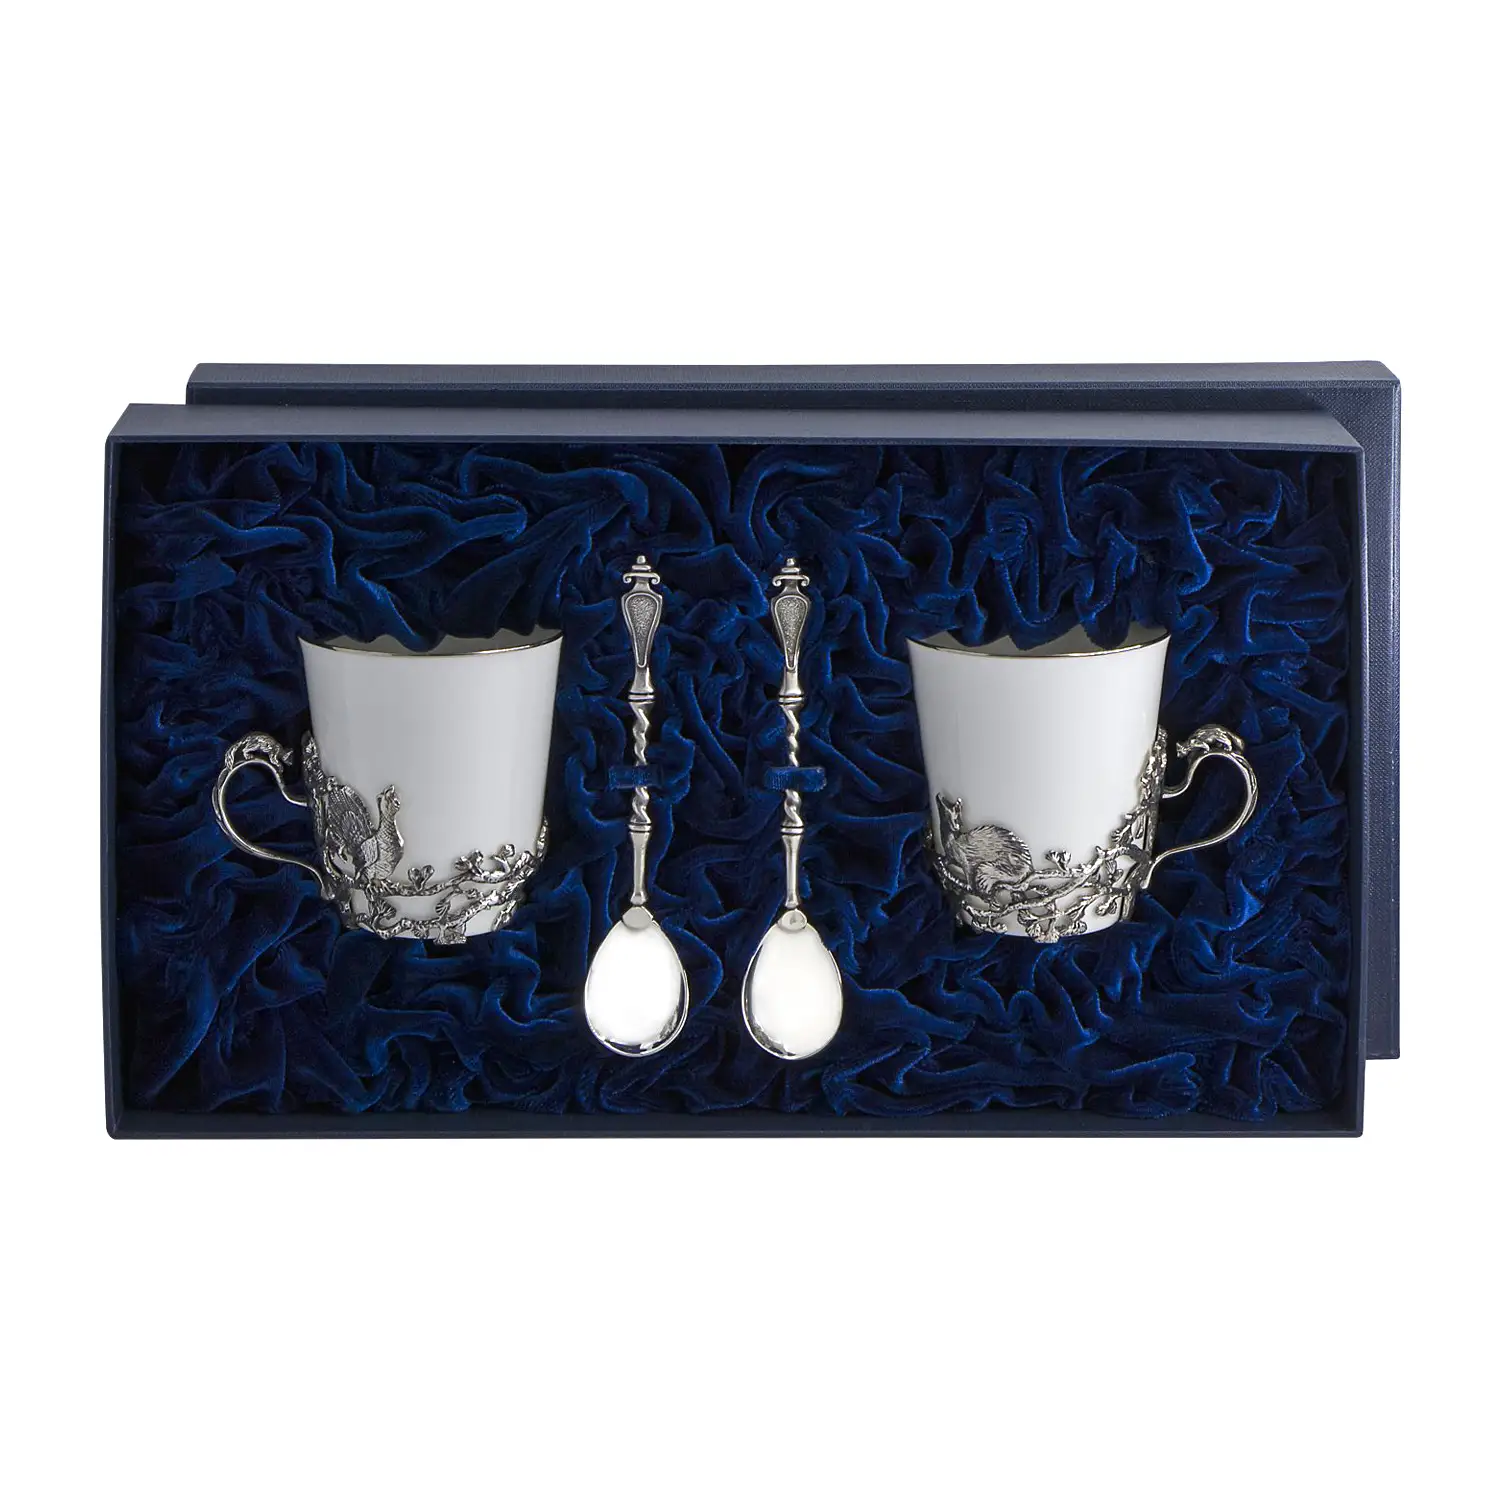 Набор чайных чашек Куница: ложка, чашка (Серебро 925) набор чайных чашек витая ложка чашка серебро 925